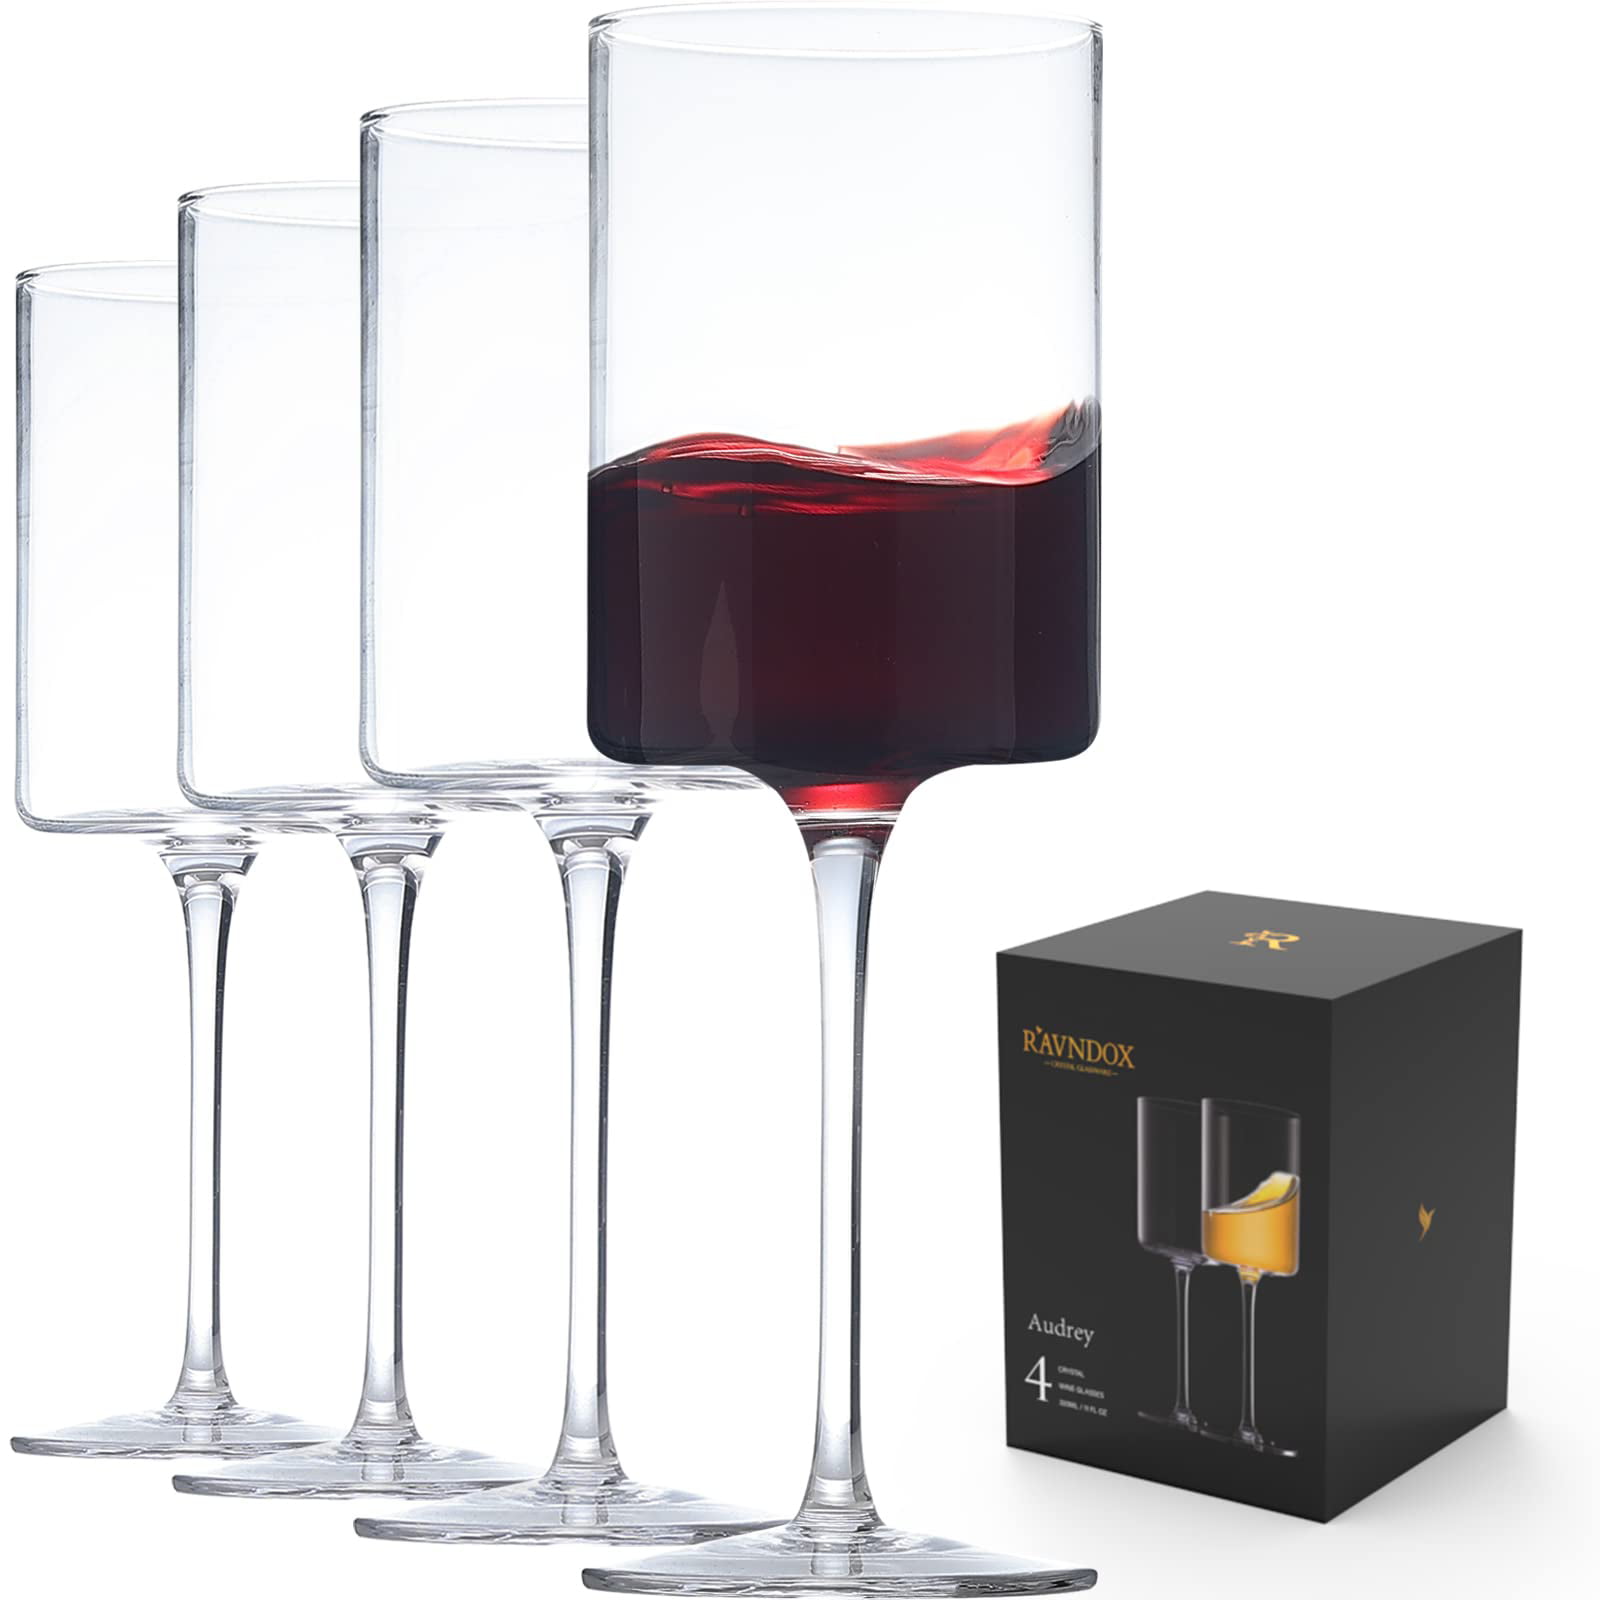 Edge Square Wine Glasses, Crate & Barrel